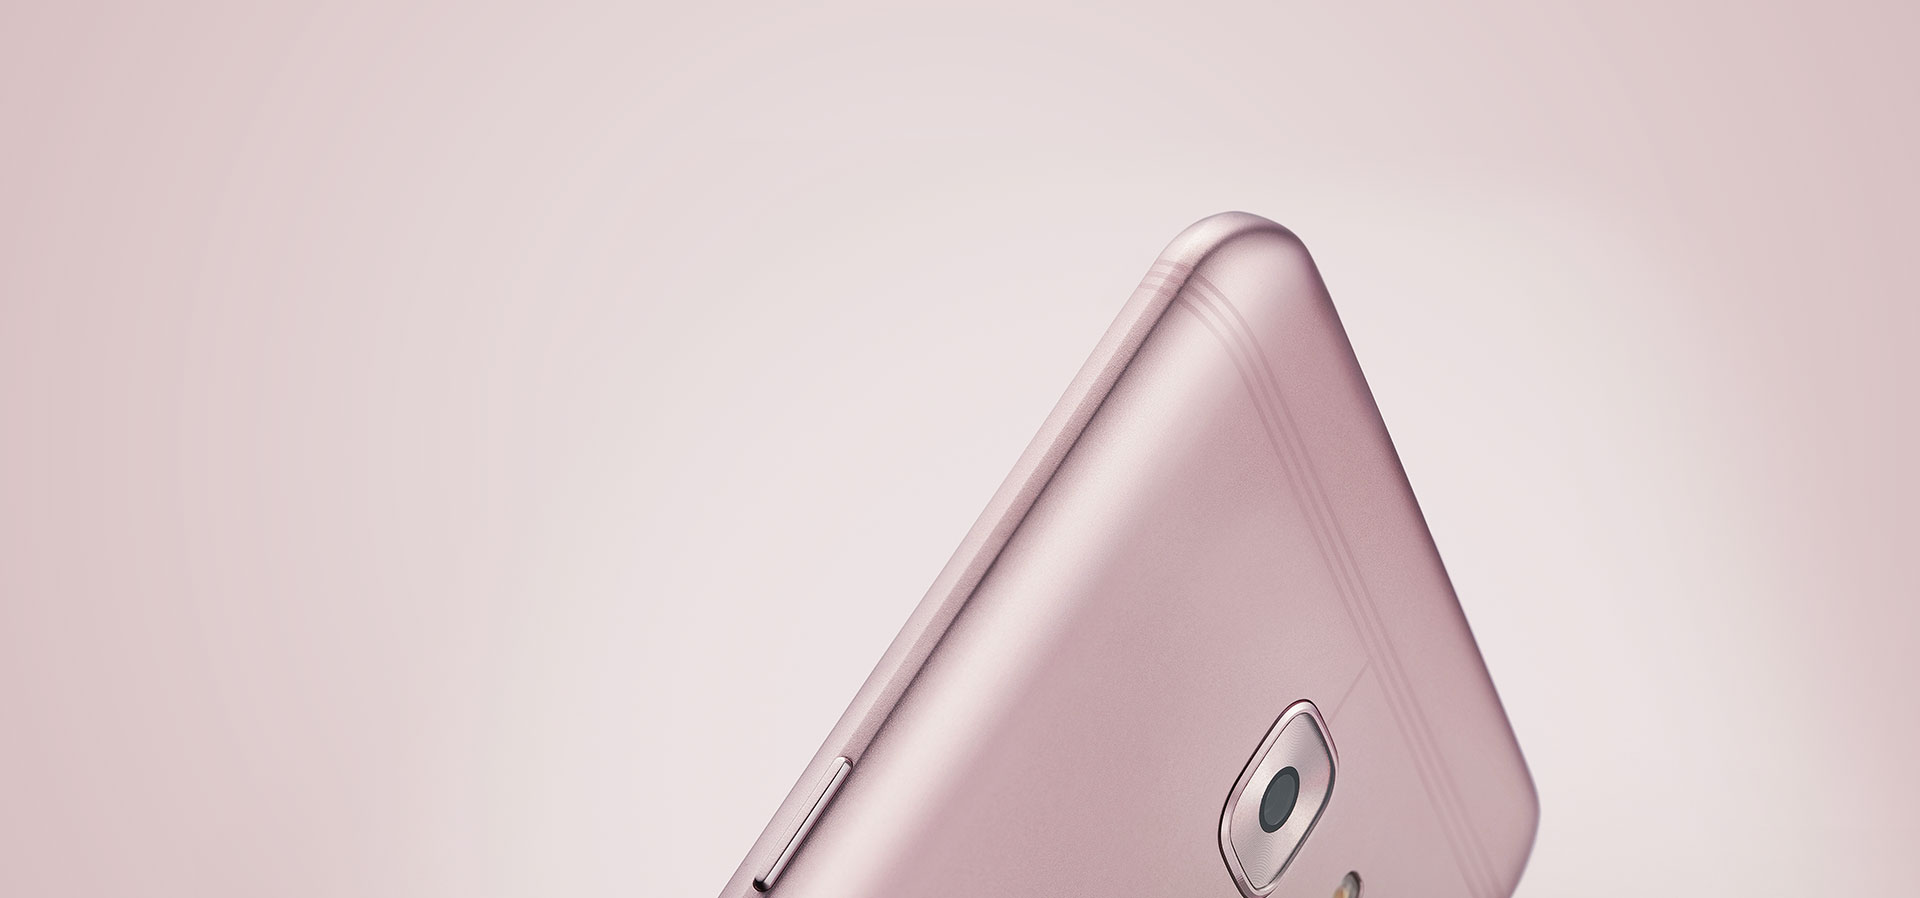 Samsung Galaxy C9 Pro chính thức ra mắt tại Trung Quốc: cấu hình cao, $470